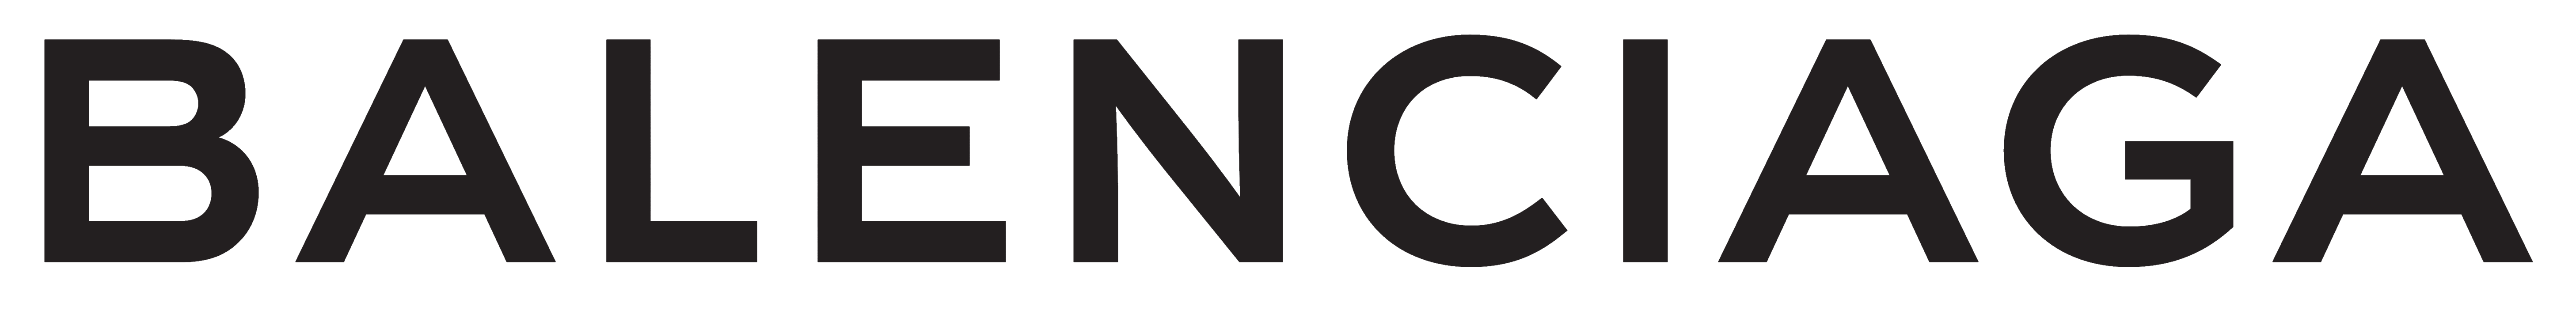 Balenciaga – Logo, brand and logotype